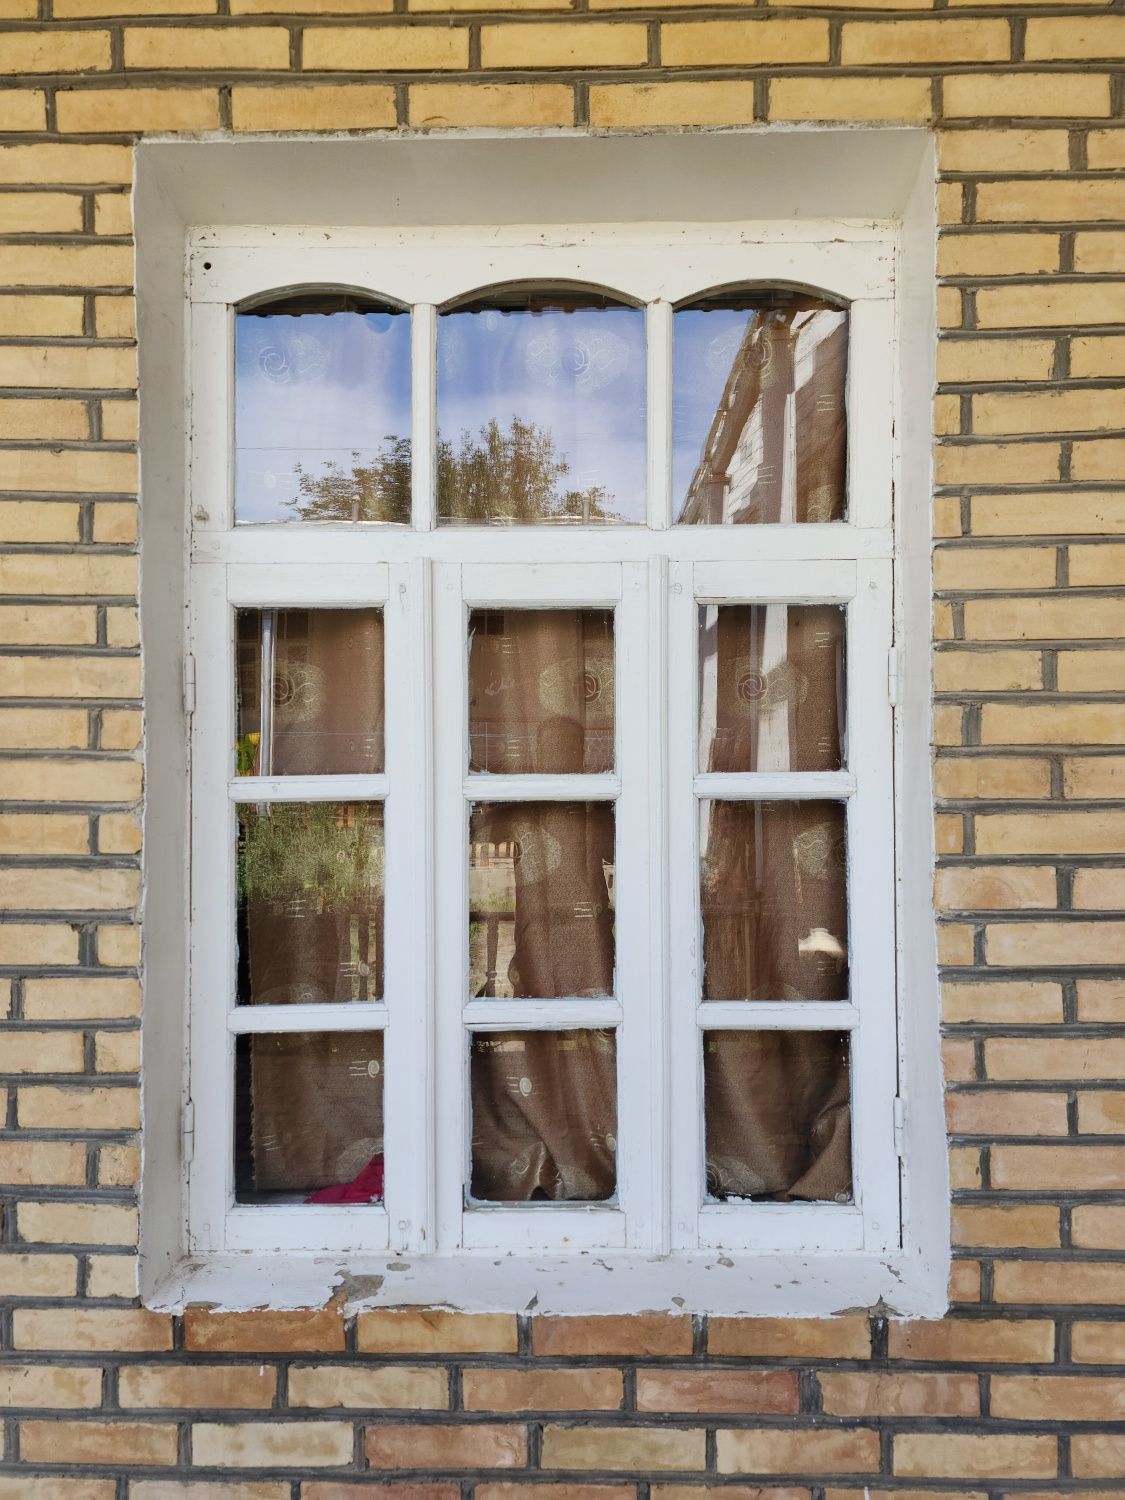 Окна деревянные деразалар оптим арзон нархда